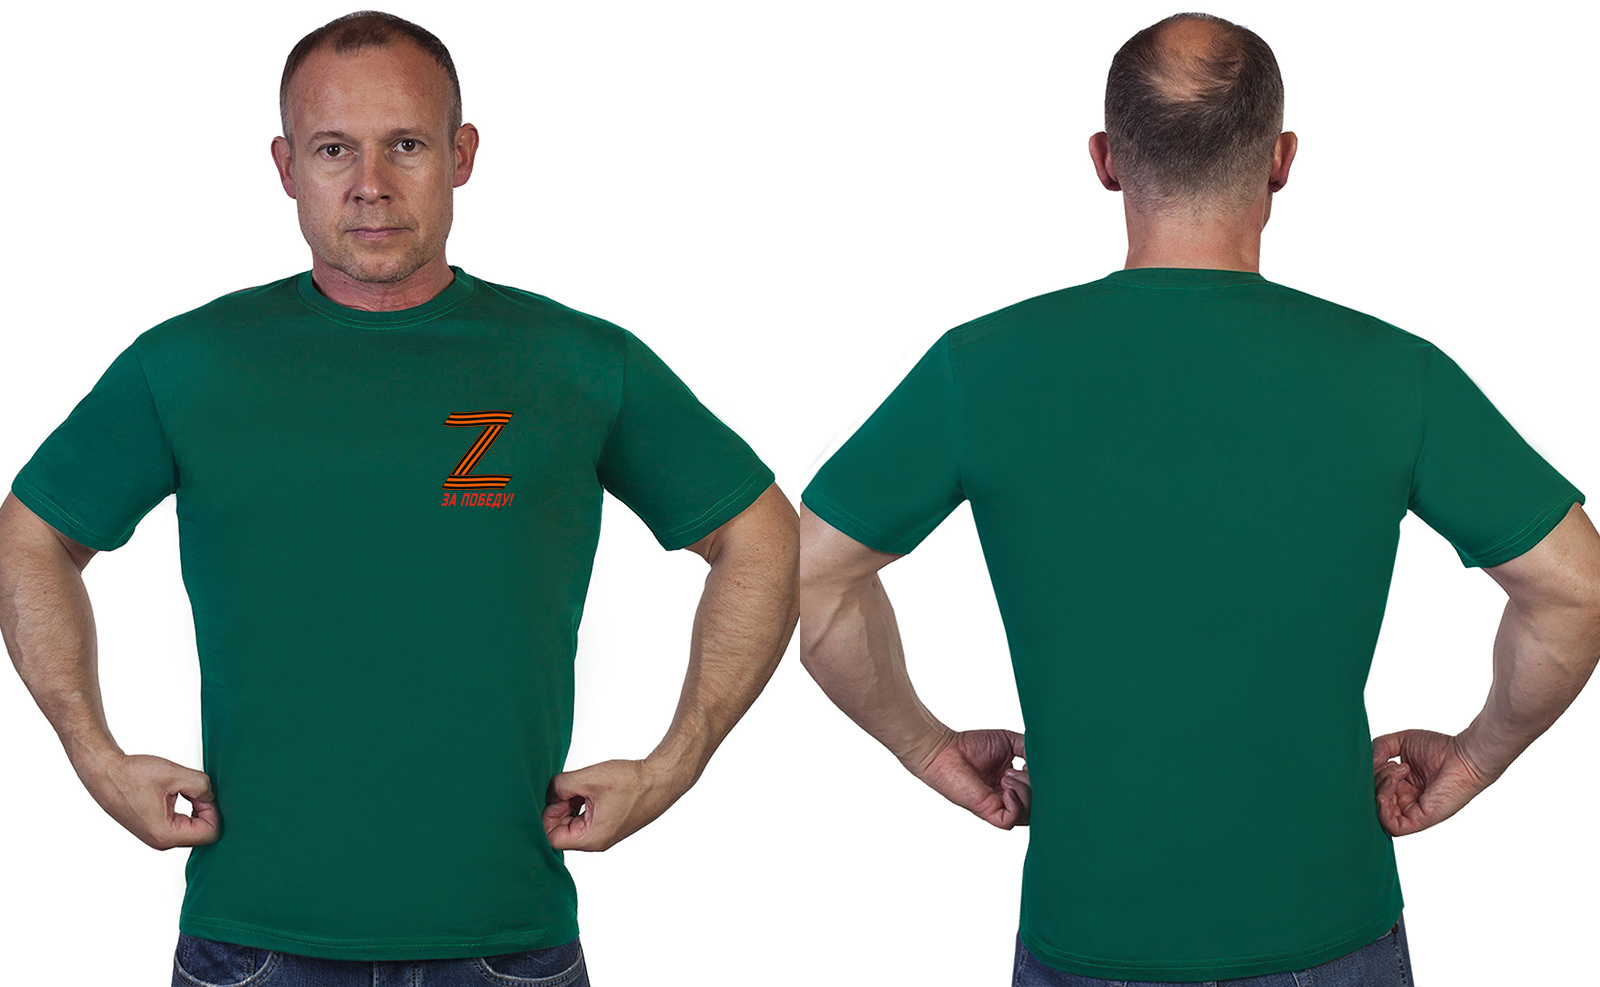 Заказать недорого футболку Zа Победу